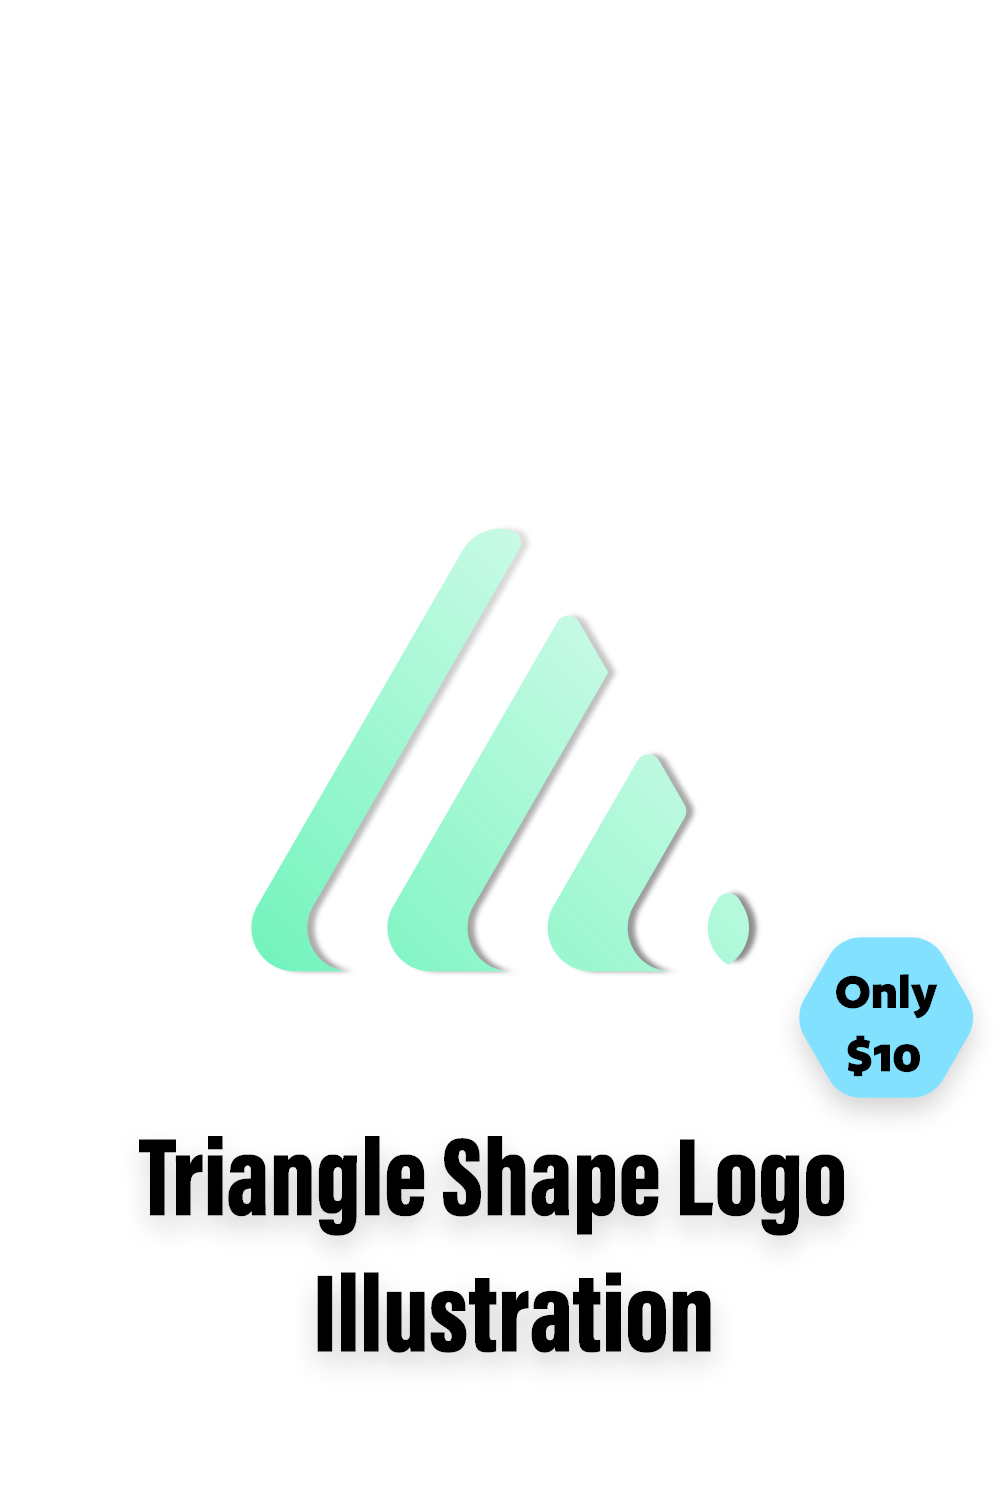 Triangle Shape Logo Pinterest image.